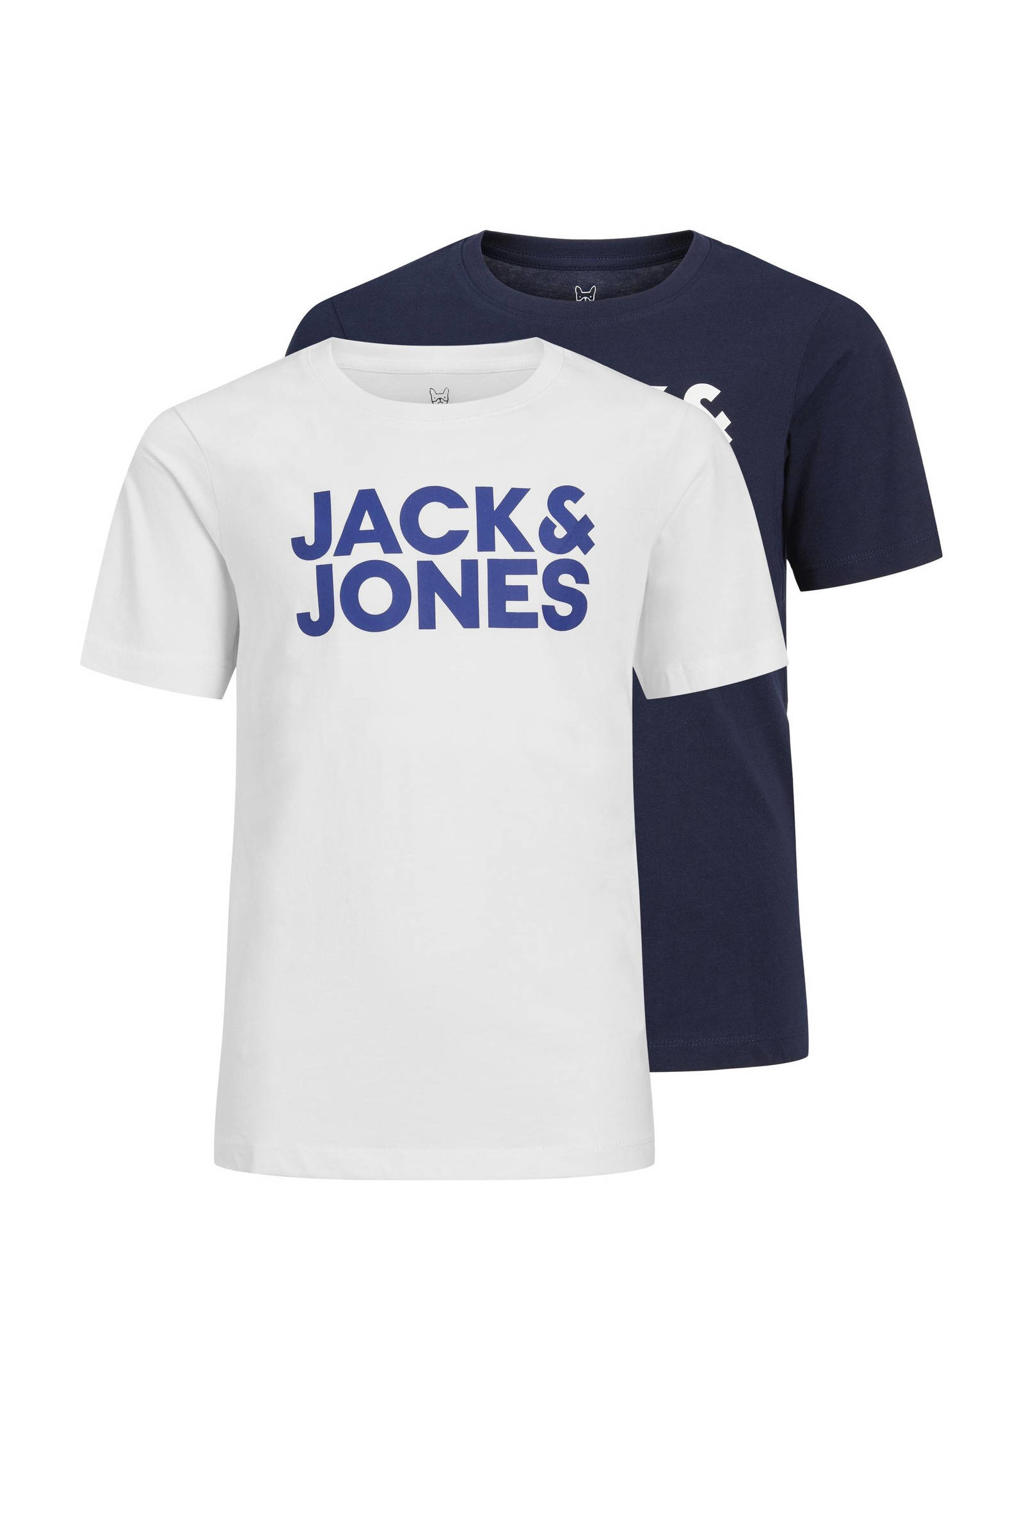 JACK & JONES JUNIOR t-shirt - set van 2 donkerblauw/wit